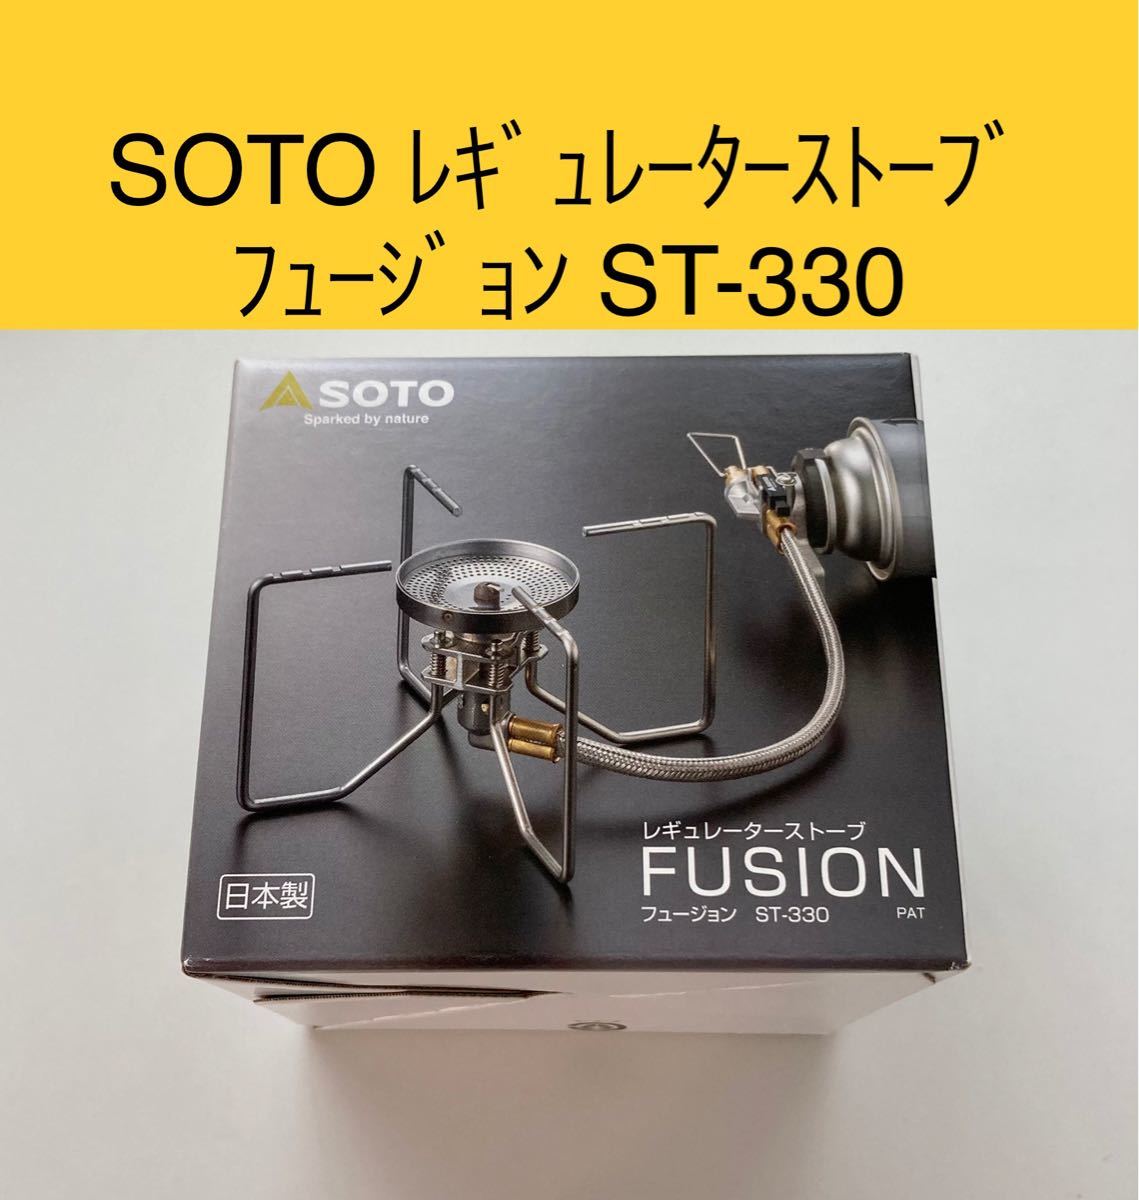 SOTO レギュレーターストーブ フュージョン ST-330